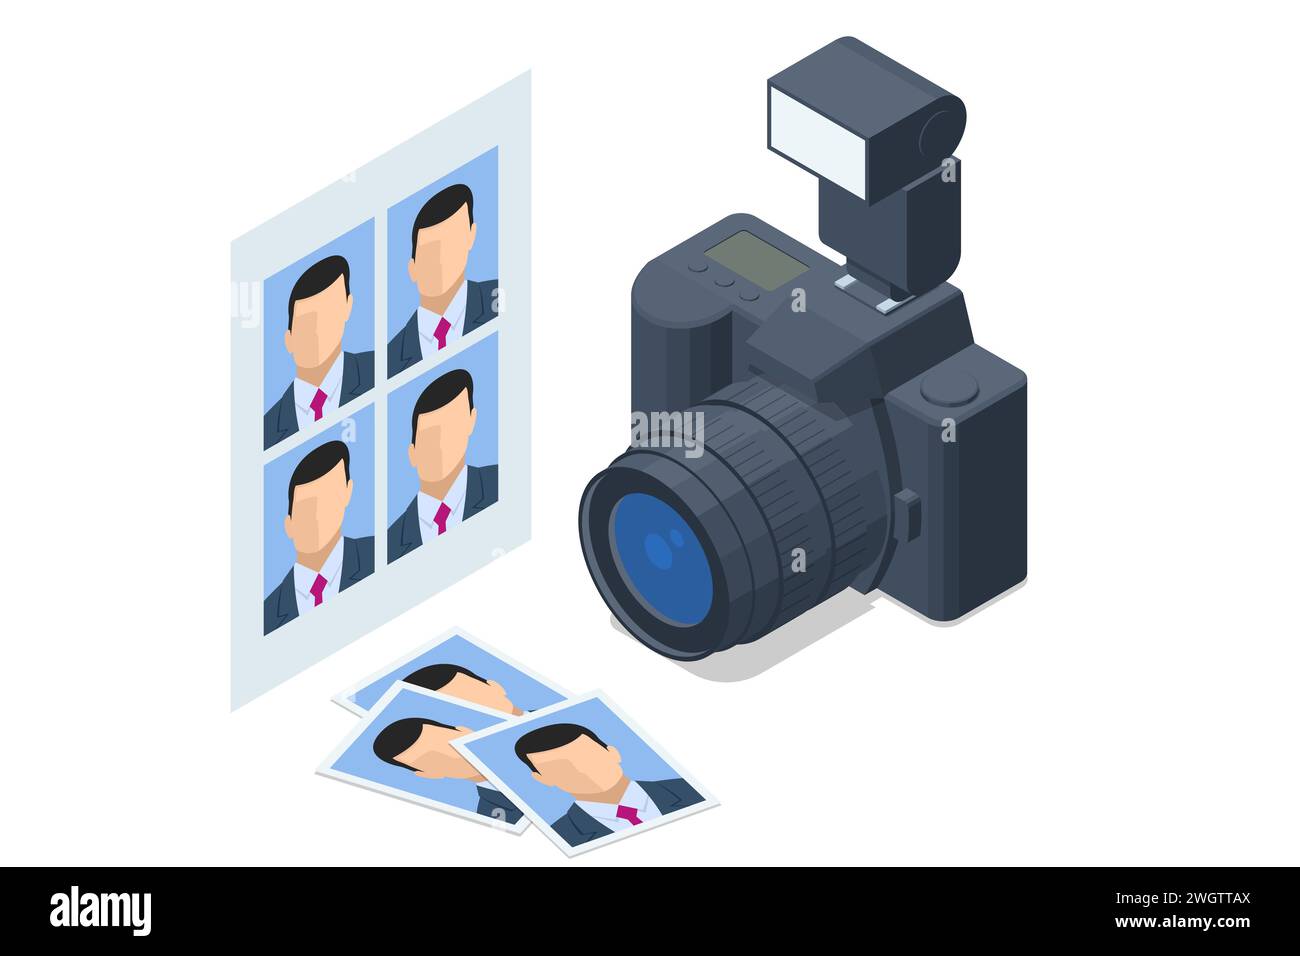 Professionelle isometrische DSLR-Fotokamera, Digitalkamera. Medientechnologie und Fotokonzept Stock Vektor